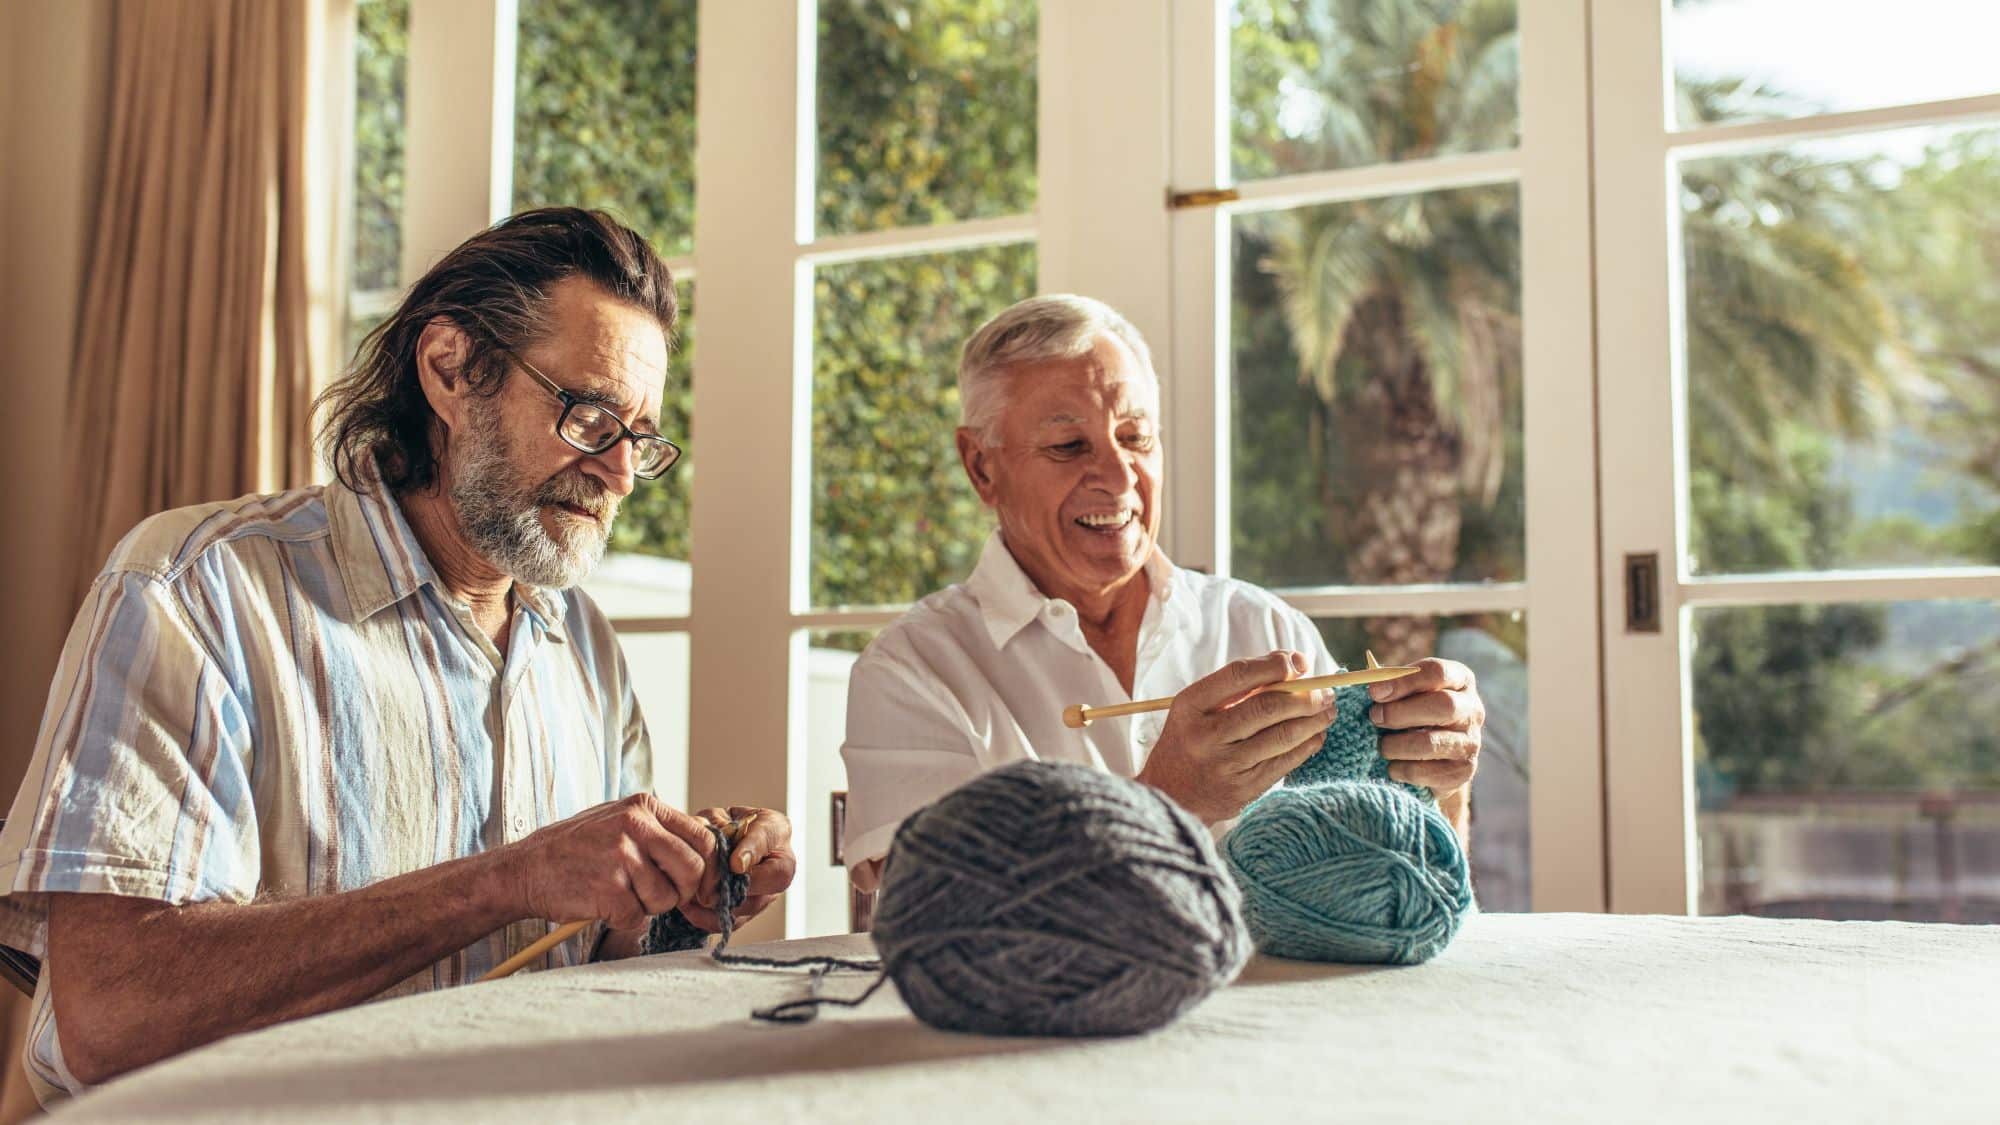 Two older men knitting together